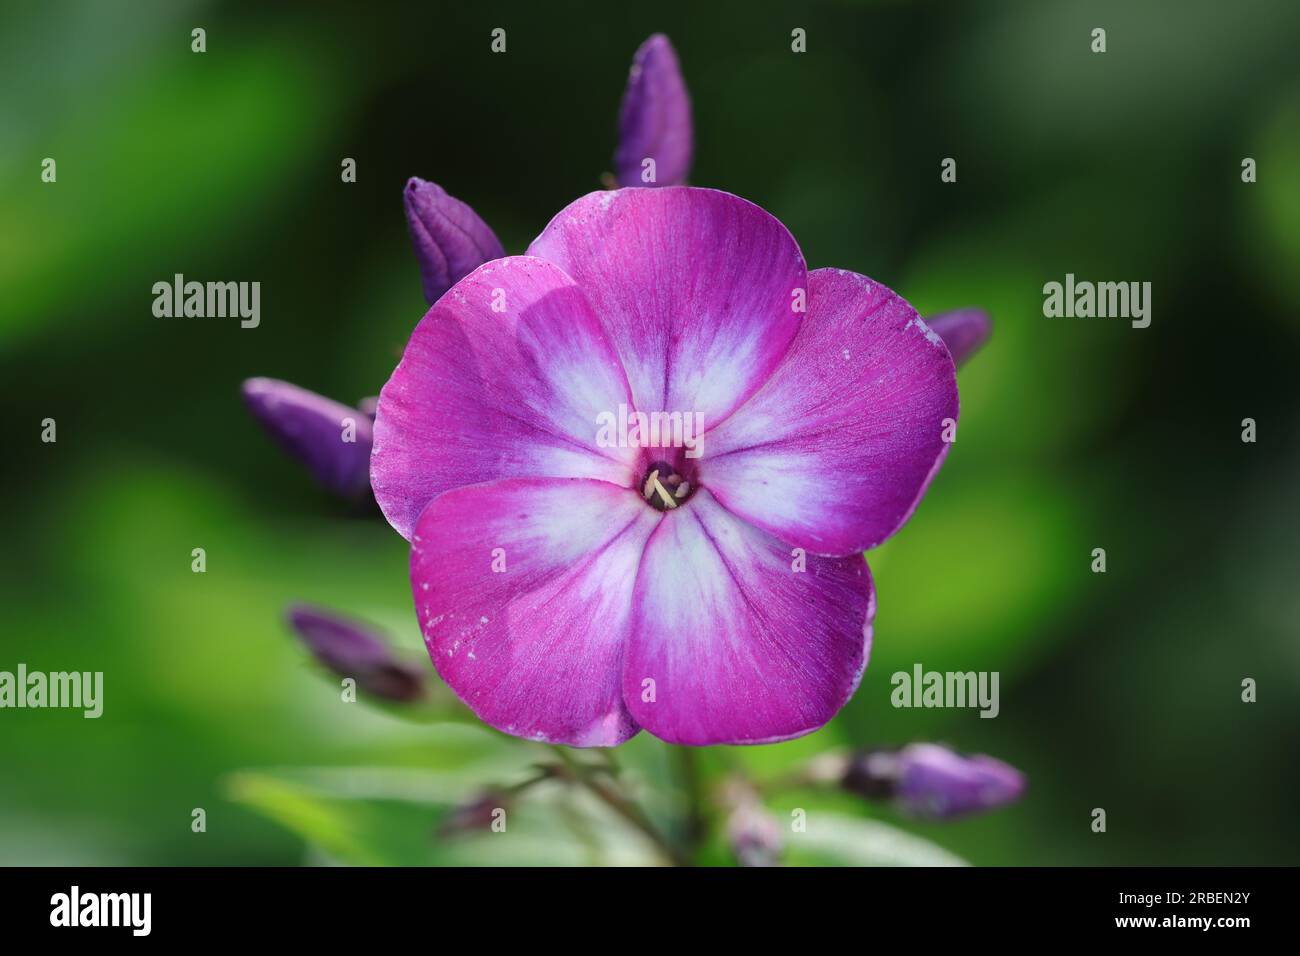 Primo piano di un singolo fiore phlox paniculata bicolore con colorazioni viola e bianche su uno sfondo sfocato verde scuro, spazio di copia Foto Stock